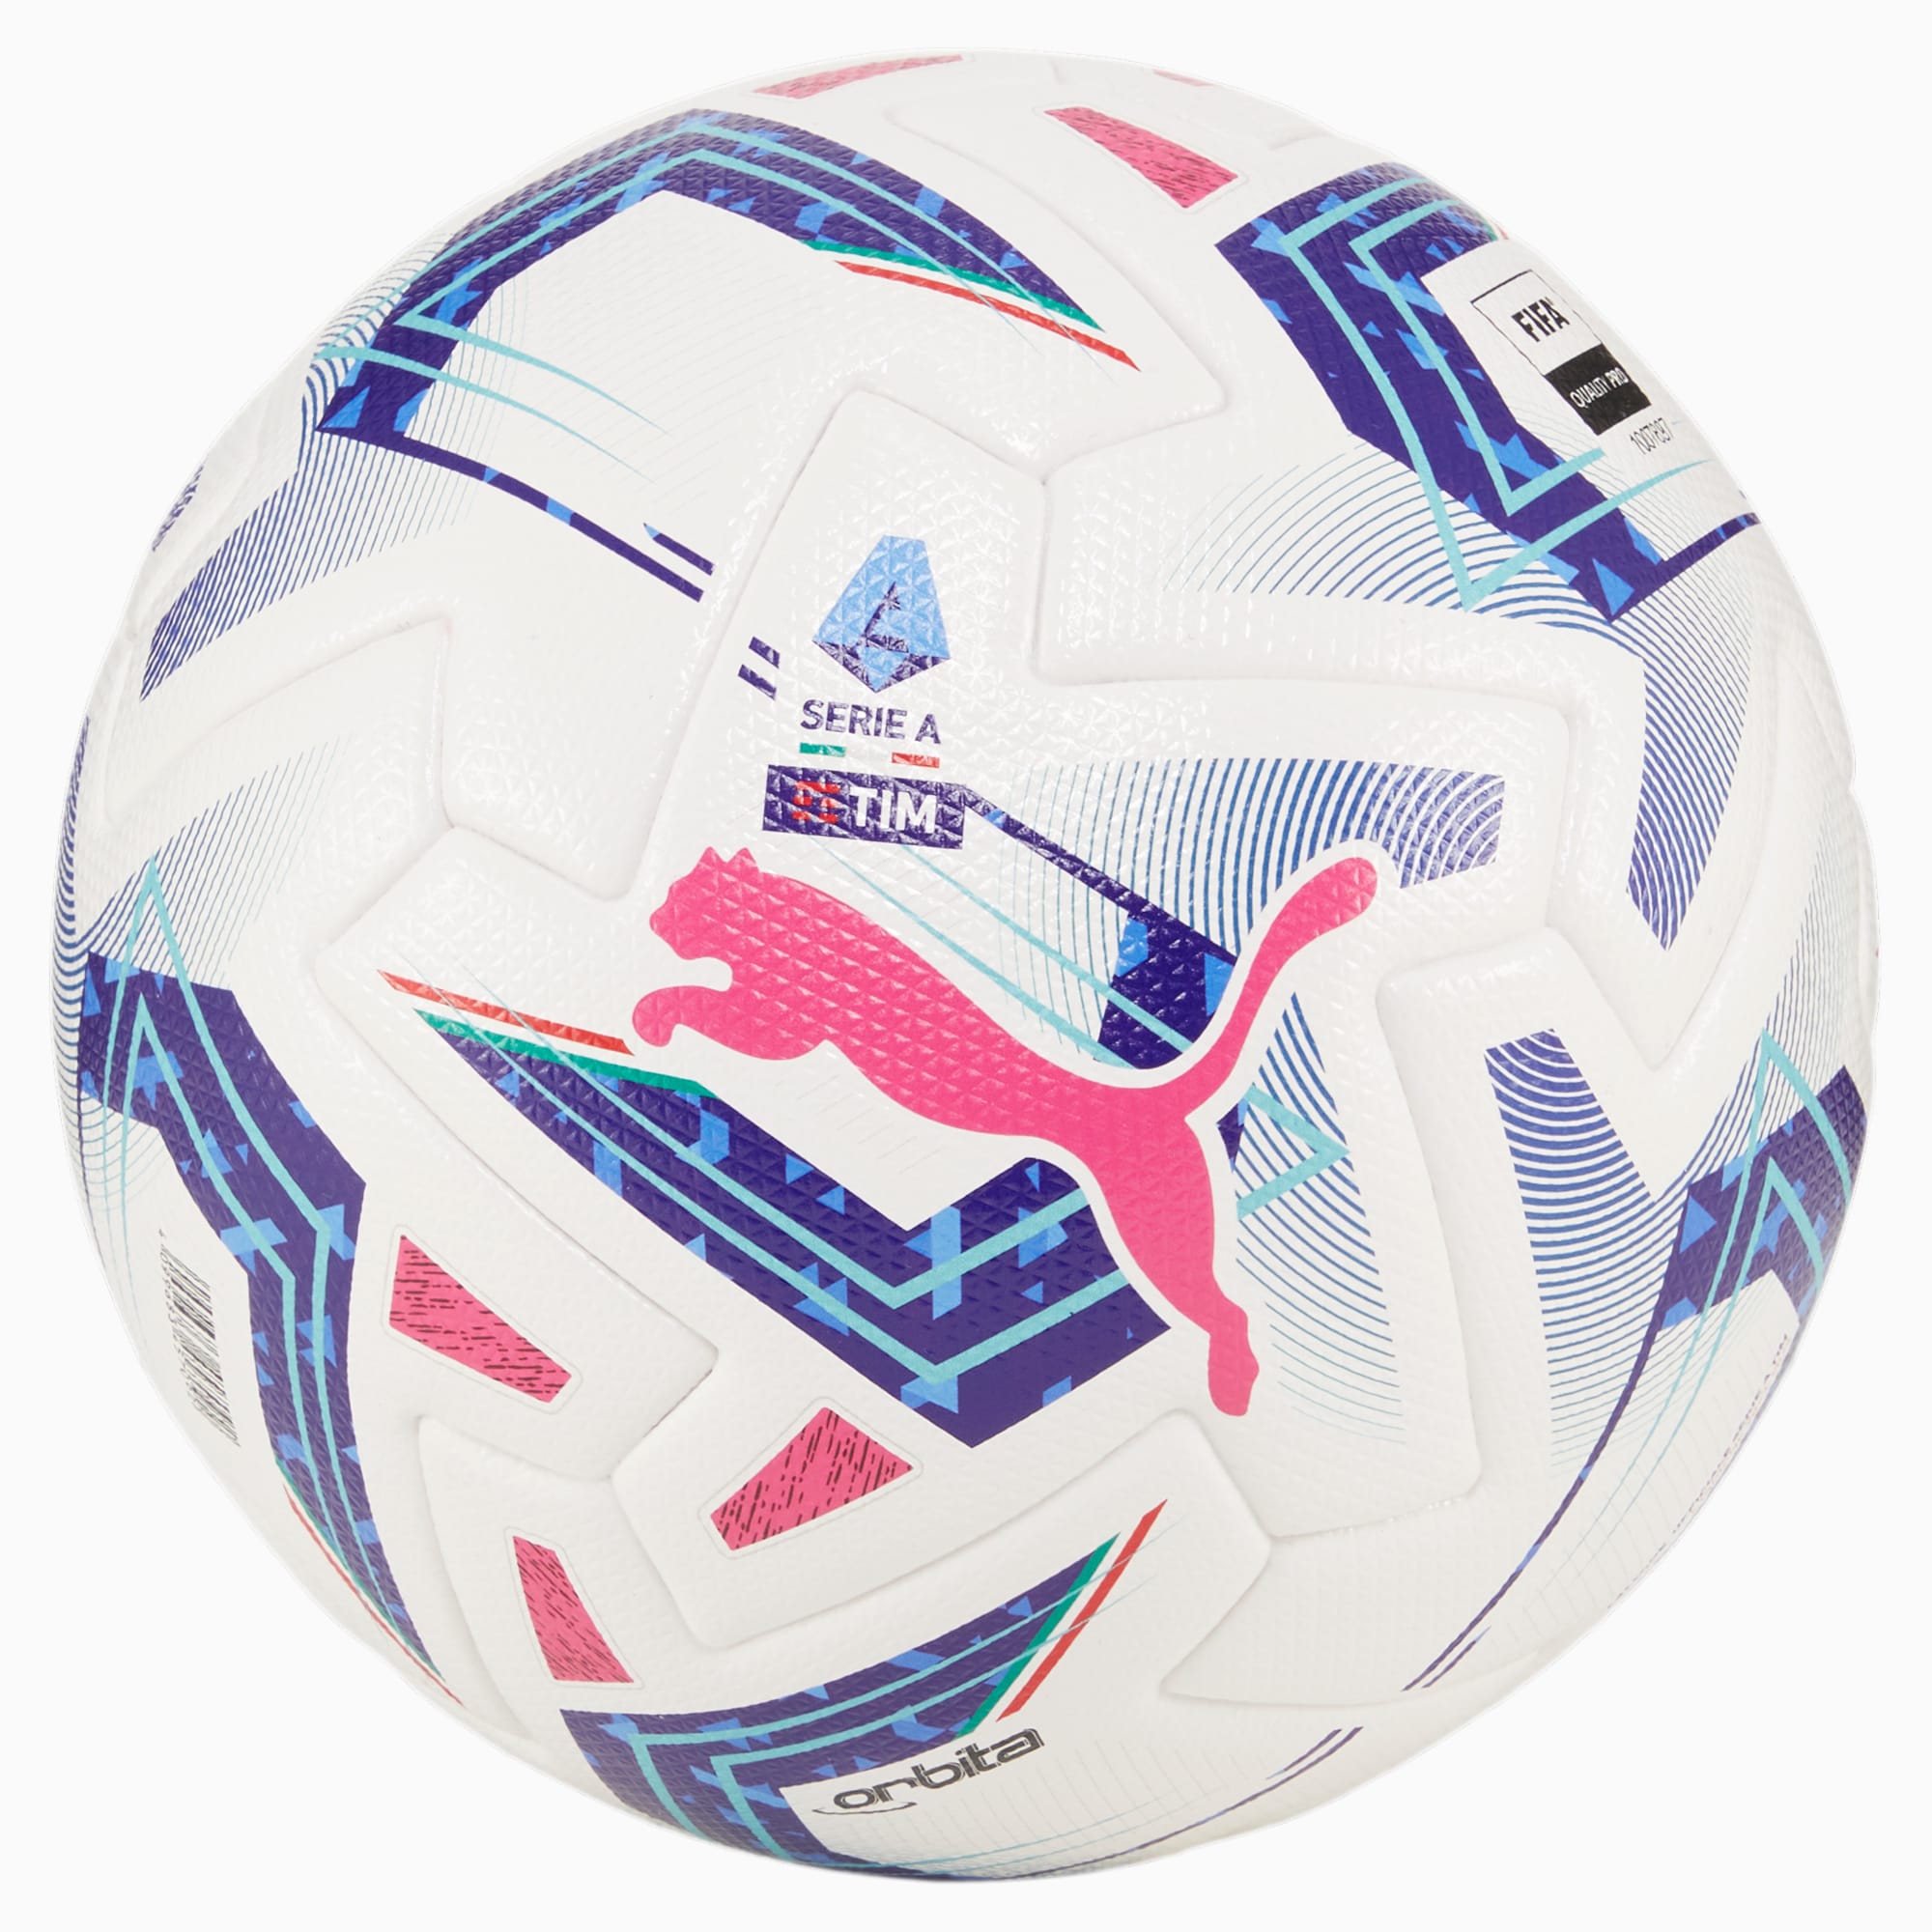 PUMA Ballon De Football Orbita Serie A Pro, Blanc/Bleu